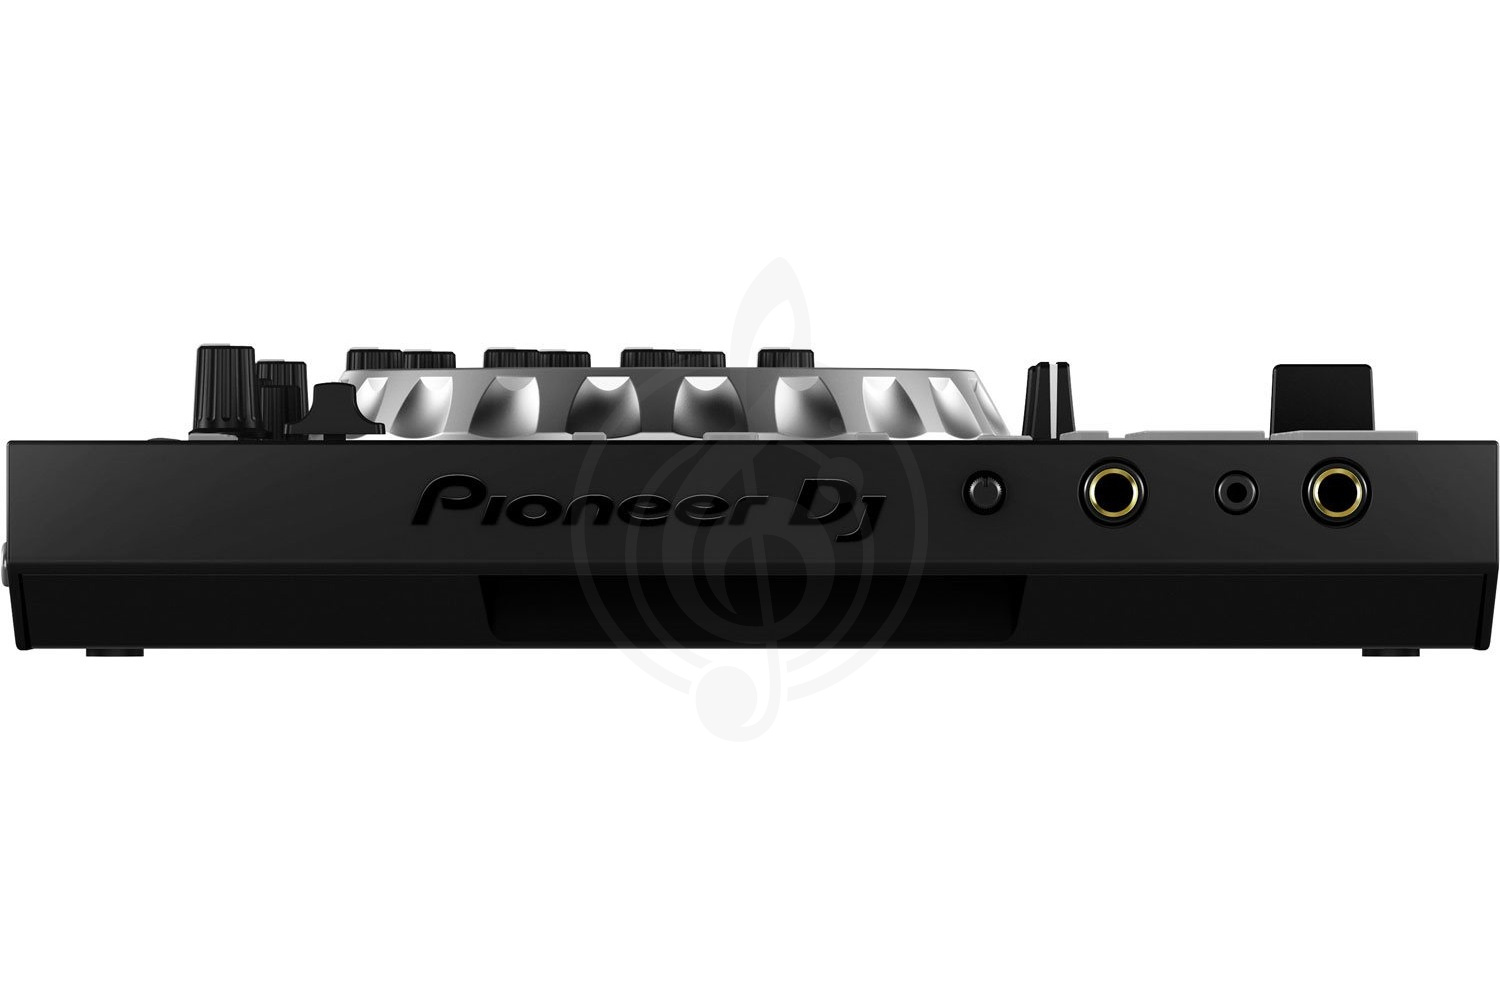 MIDI-контроллер MIDI-контроллеры Pioneer PIONEER DDJ-SB2 - DJ-контроллер для SERATO DDJ-SB2 - фото 3